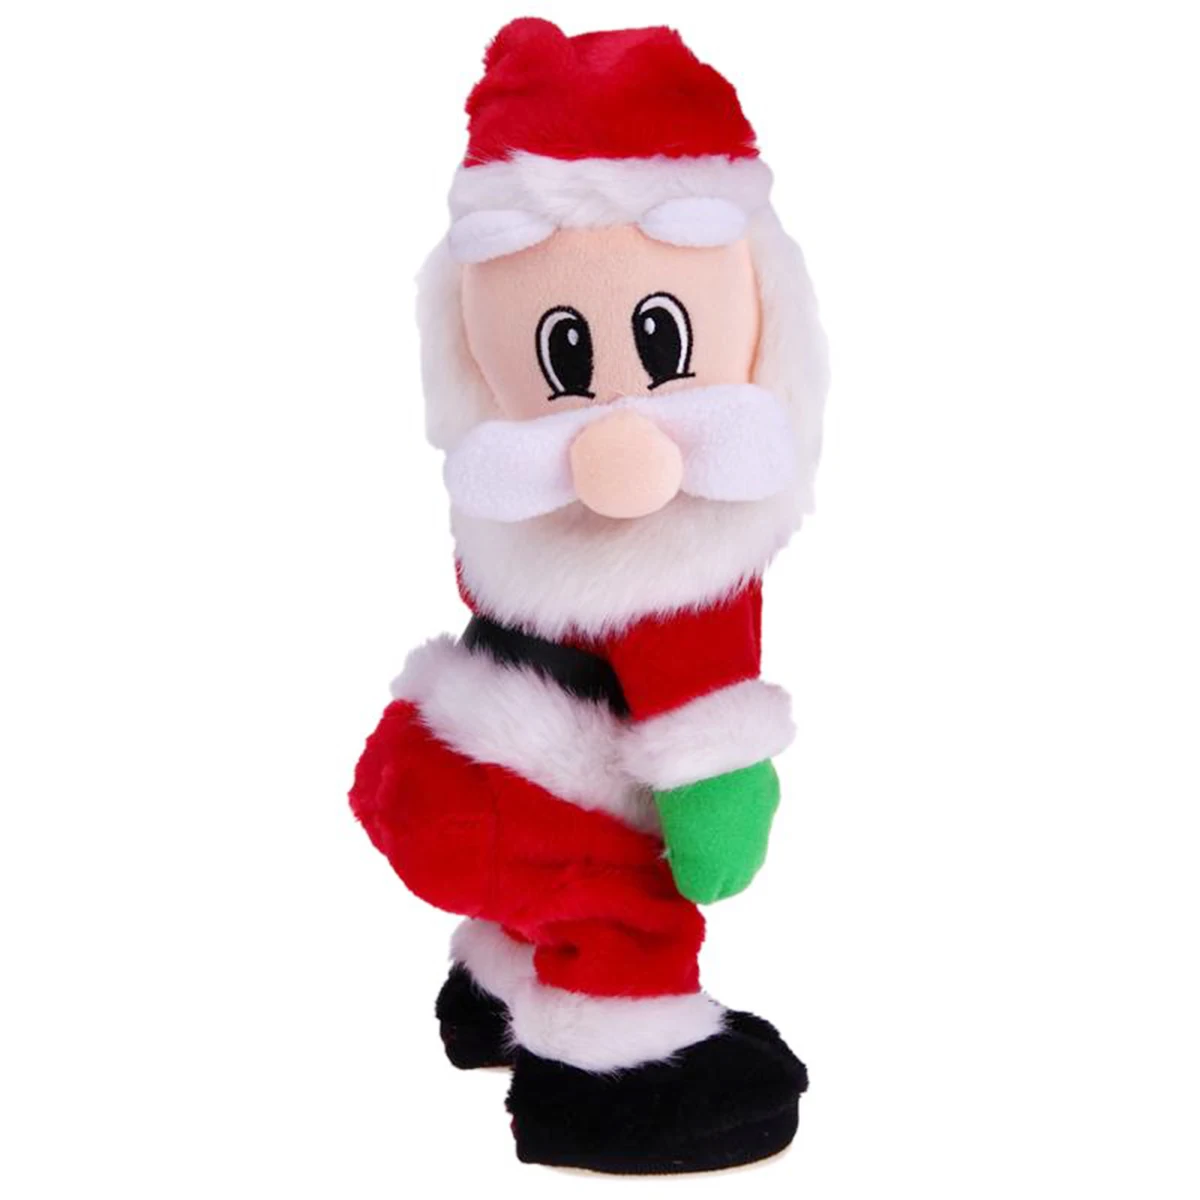 MAGICYOYO Новый Рождественский подарок танцы Электрический музыкальная игрушка Санта Клаус Twerking игрушка поющая кукла